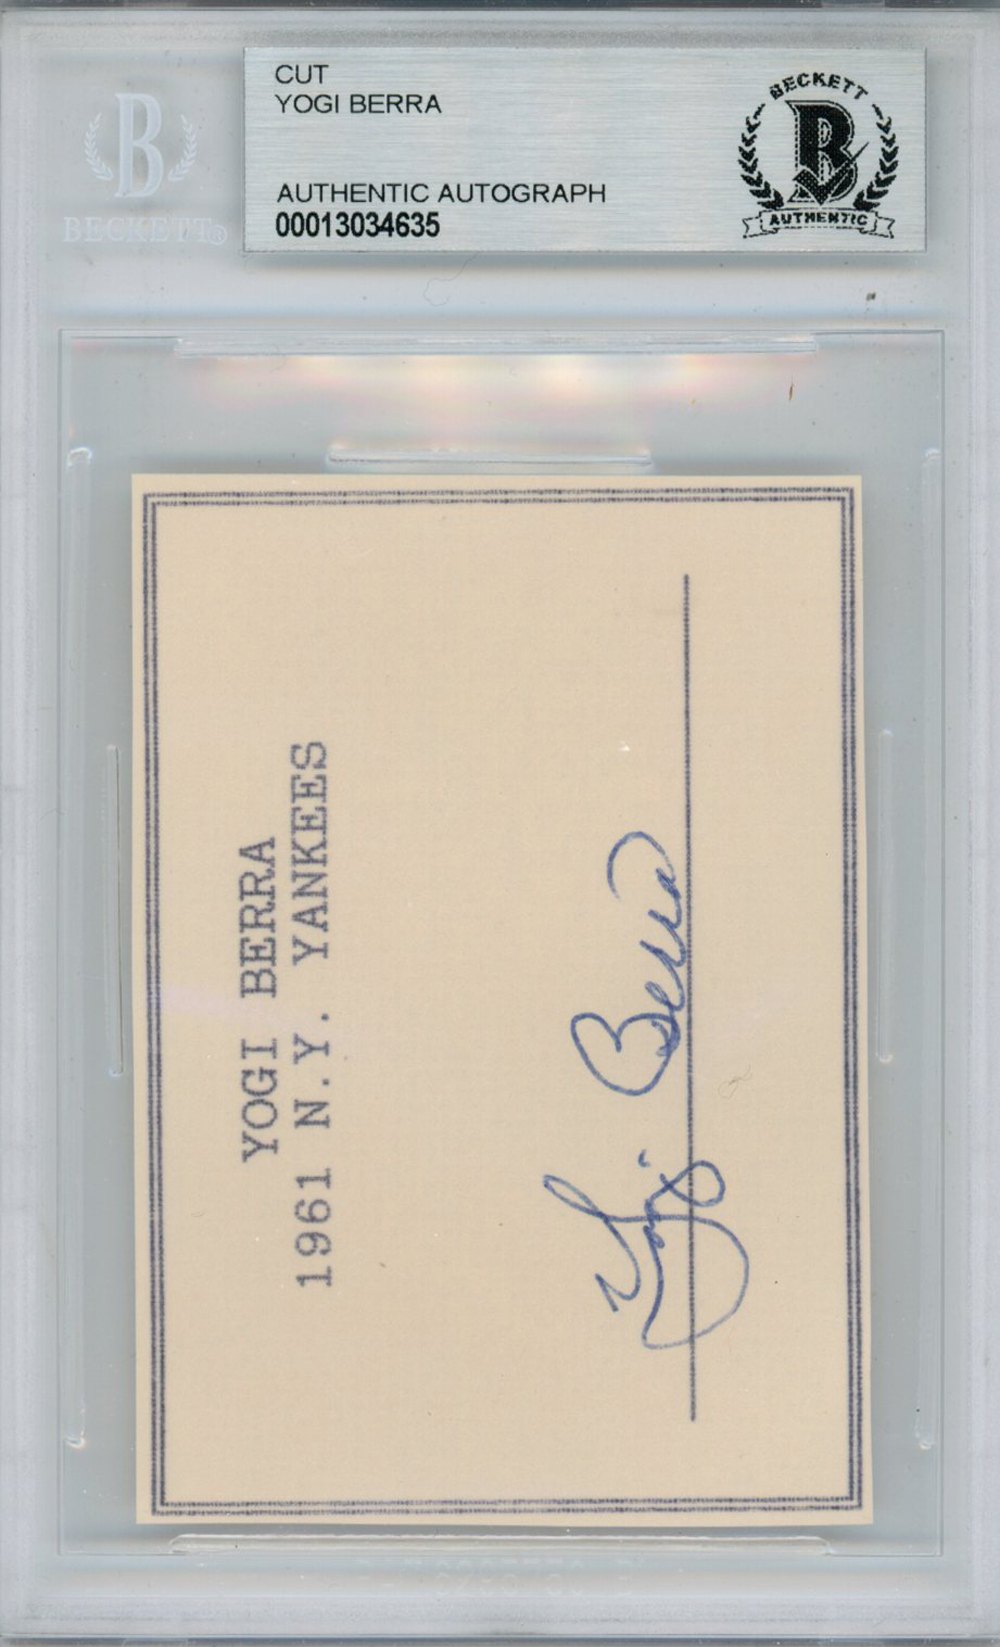 Yogi Berra 1961 N.Y. Yankees Autographed Cut Beckett Slab